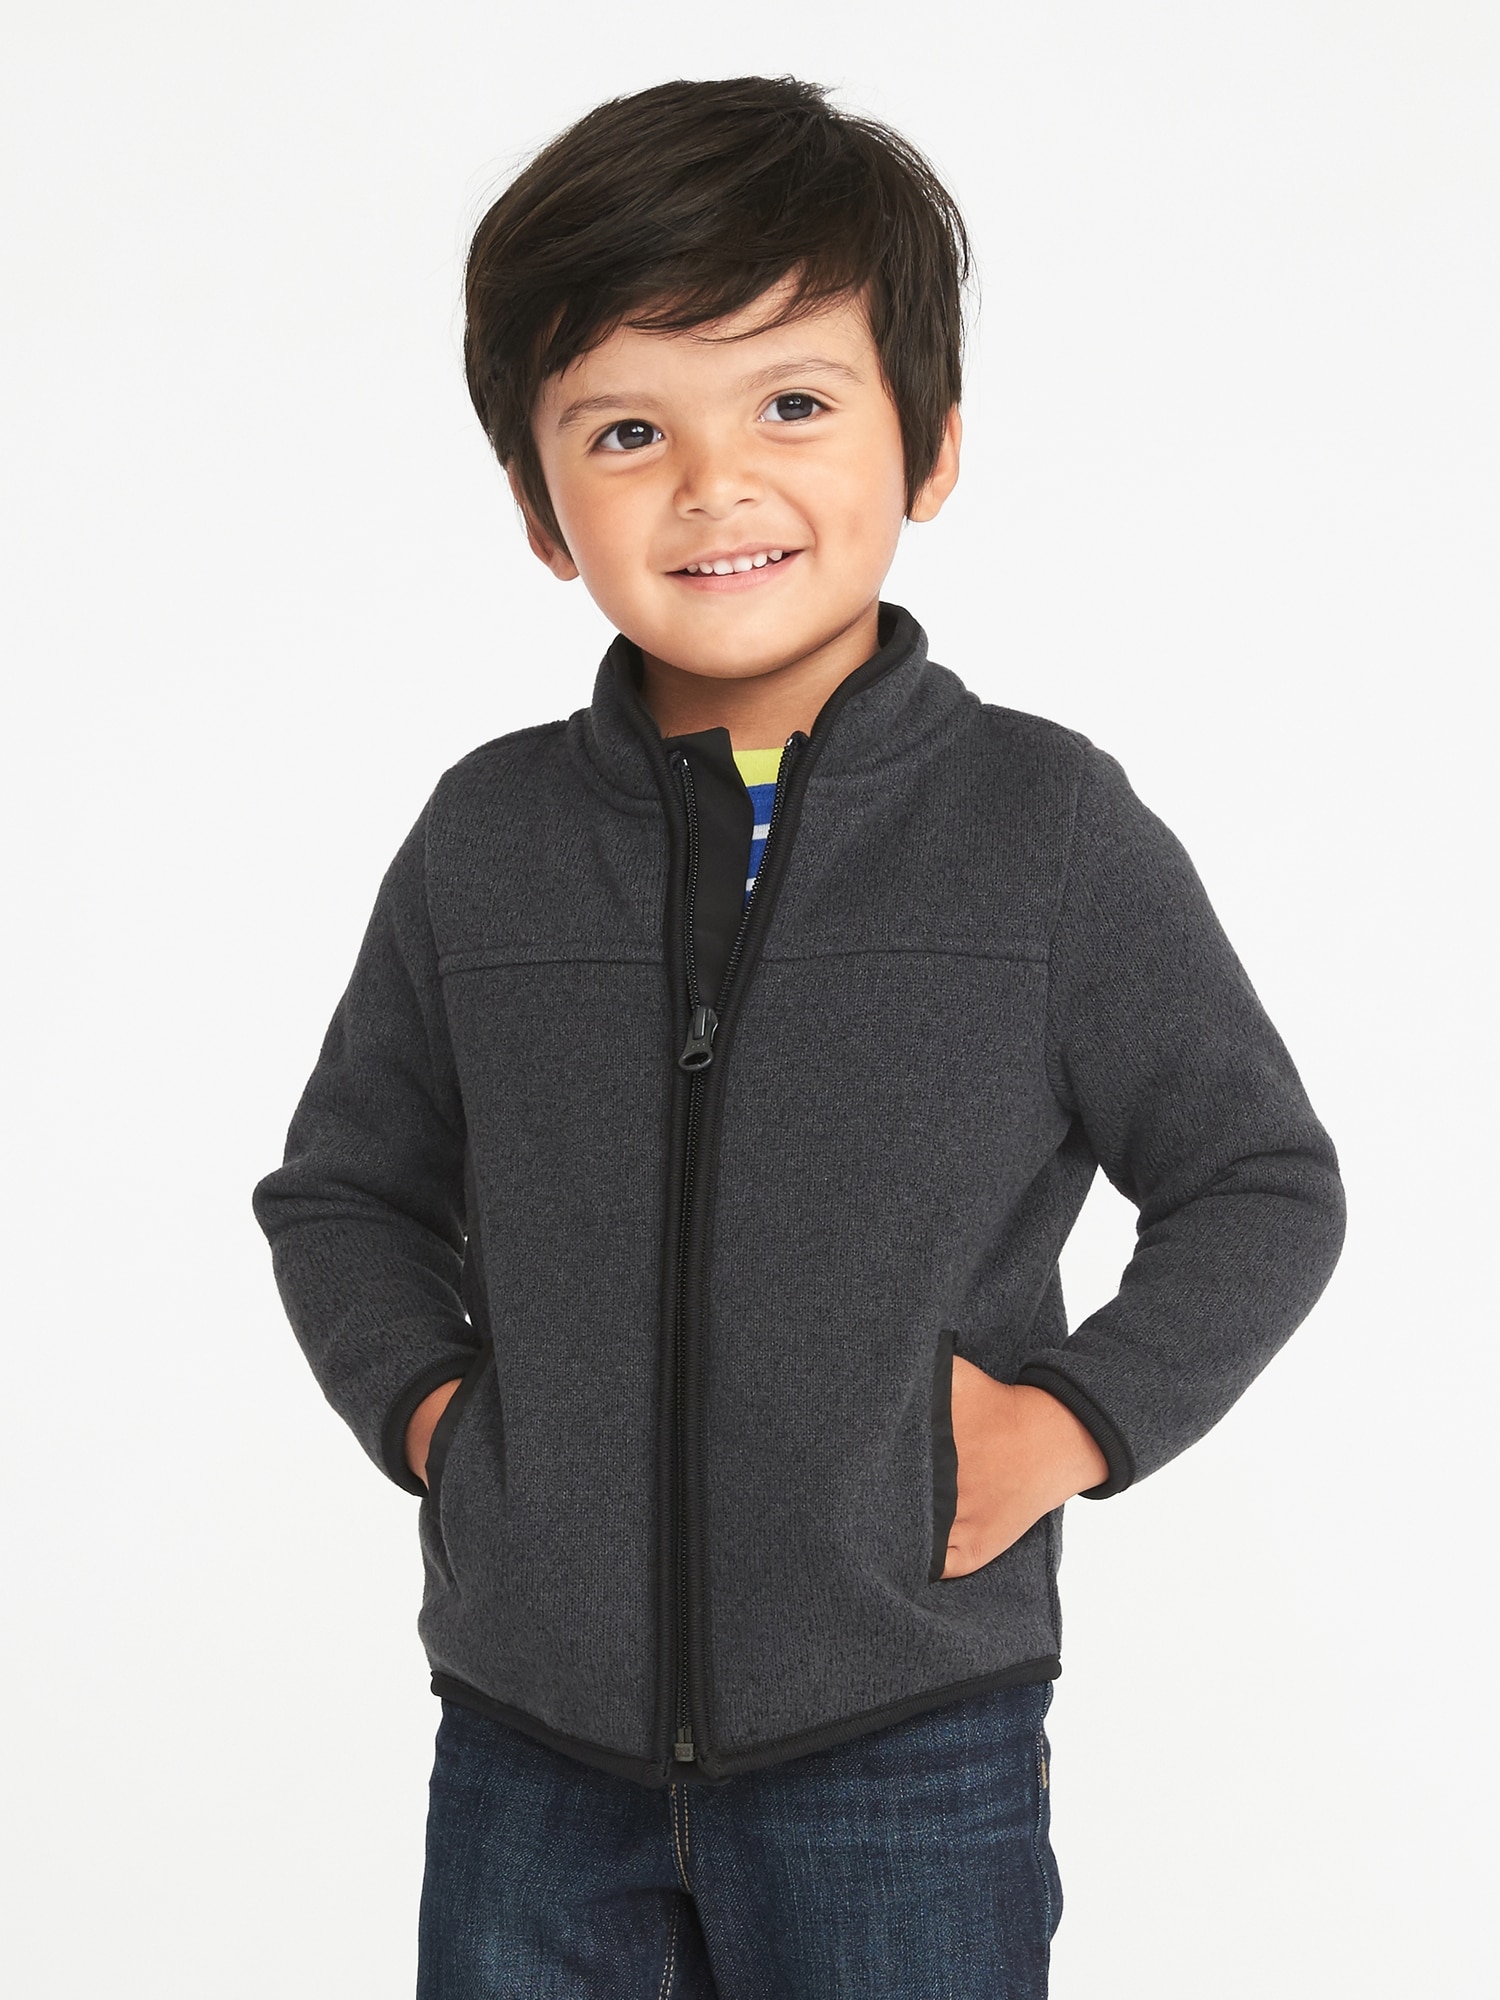 Sweater-Fleece Zip Jacket for Toddler Boys | Old Navy